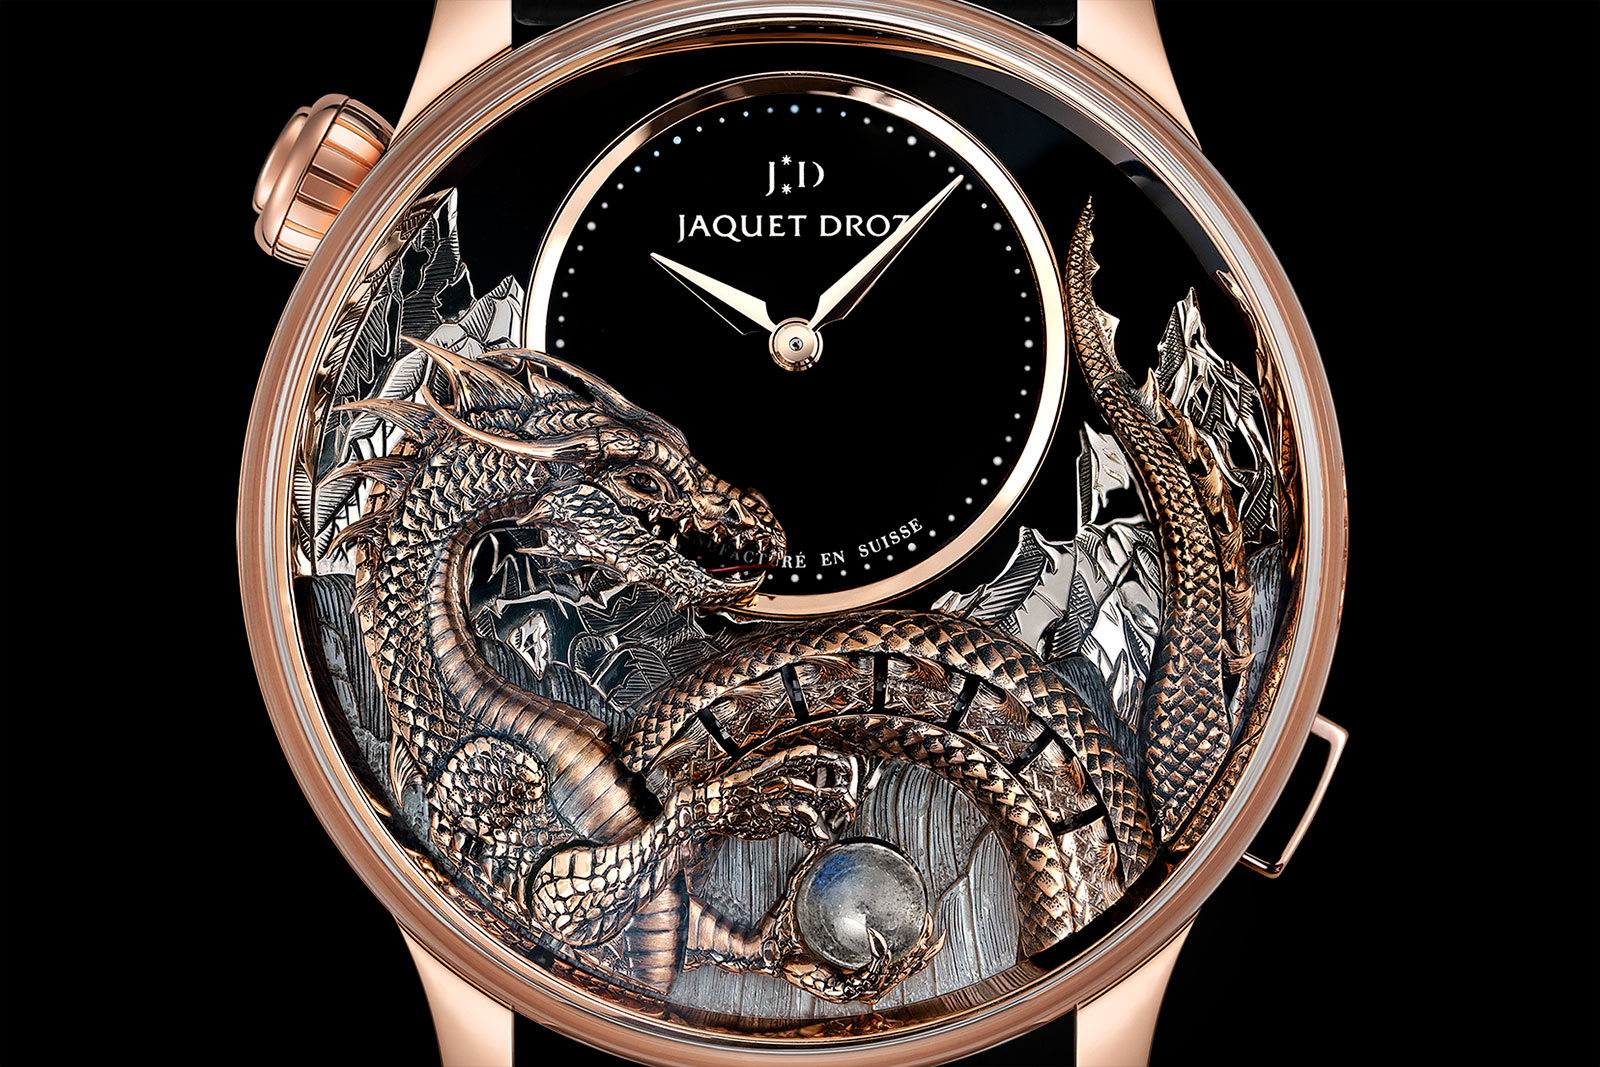 ซื้อขายนาฬิกา Jaquet Droz รับซื้อนาฬิกาทุกรุ่น ประเมินไว ราคาดีที่สุด